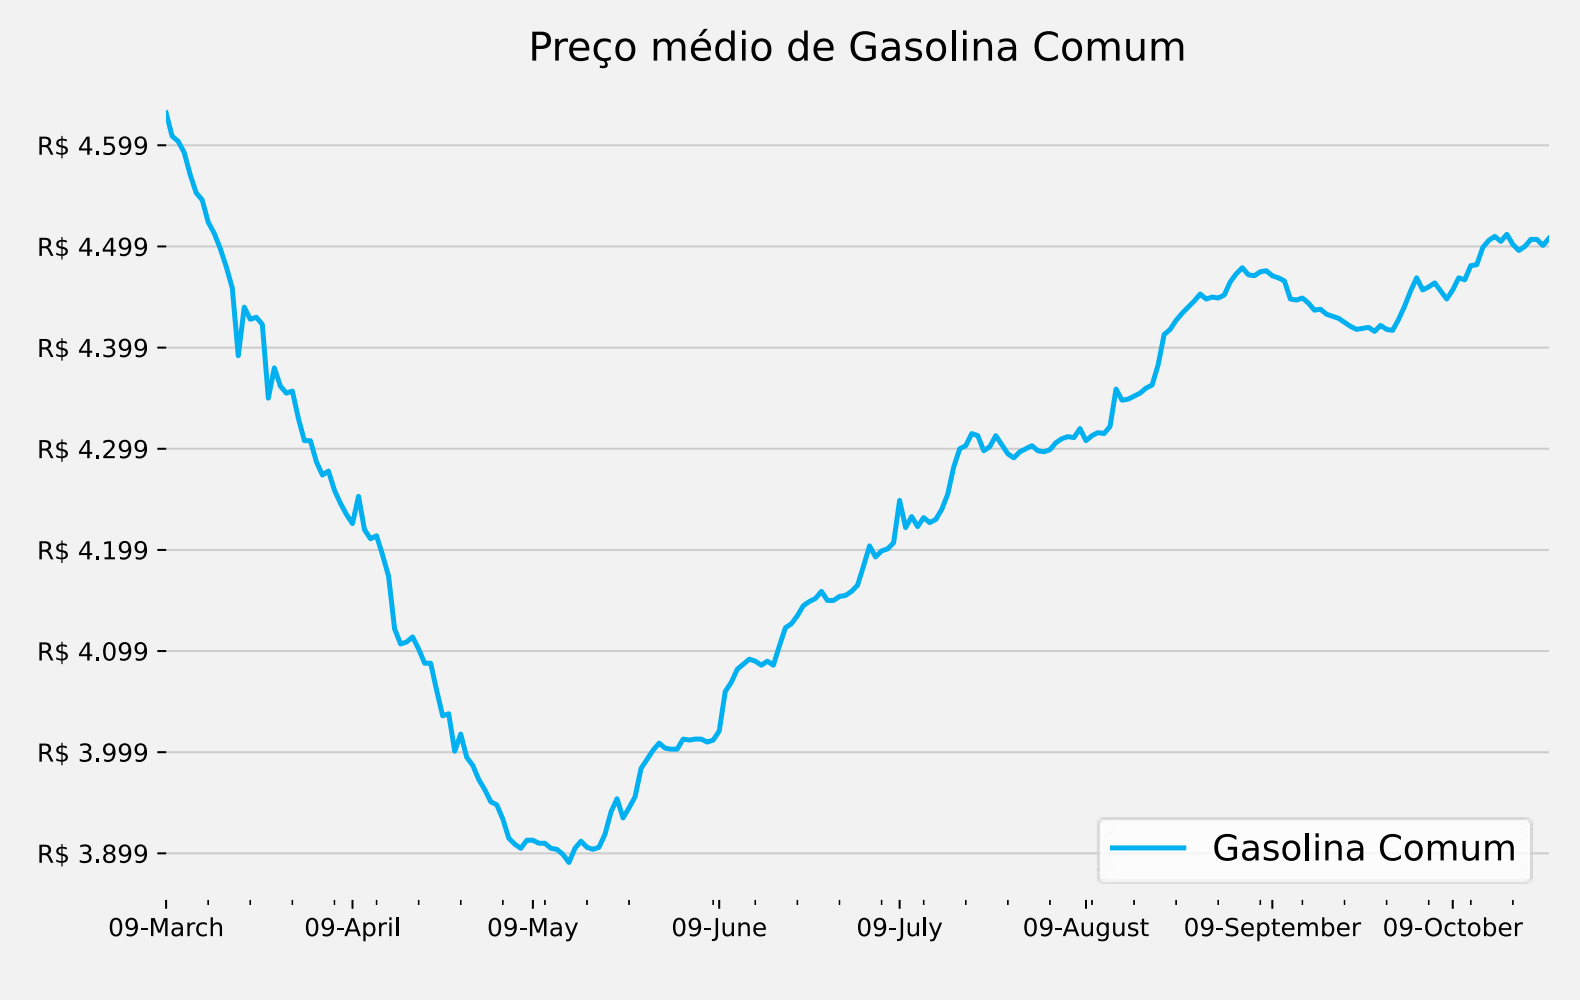 Gráfico com o preço médio da gasolina comum no Brasil.